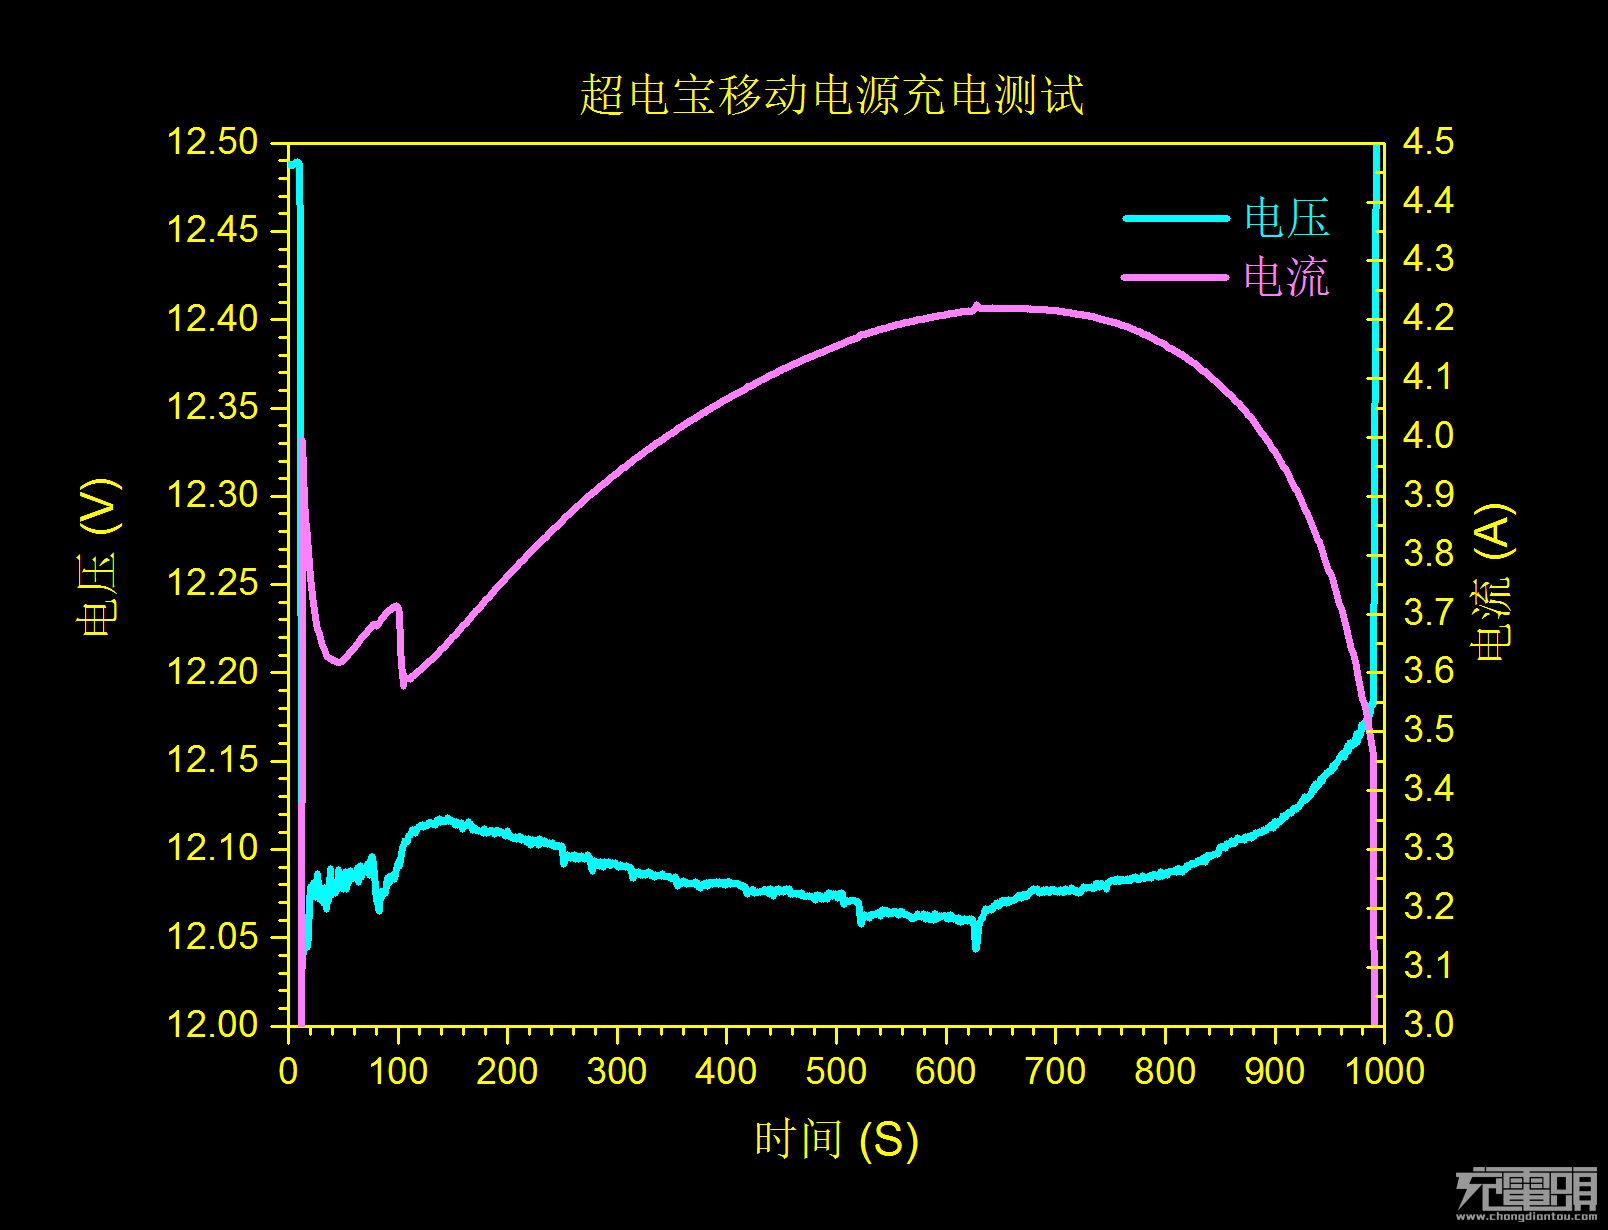 石墨烯动力电芯首秀 超电宝NFA1评测第一波